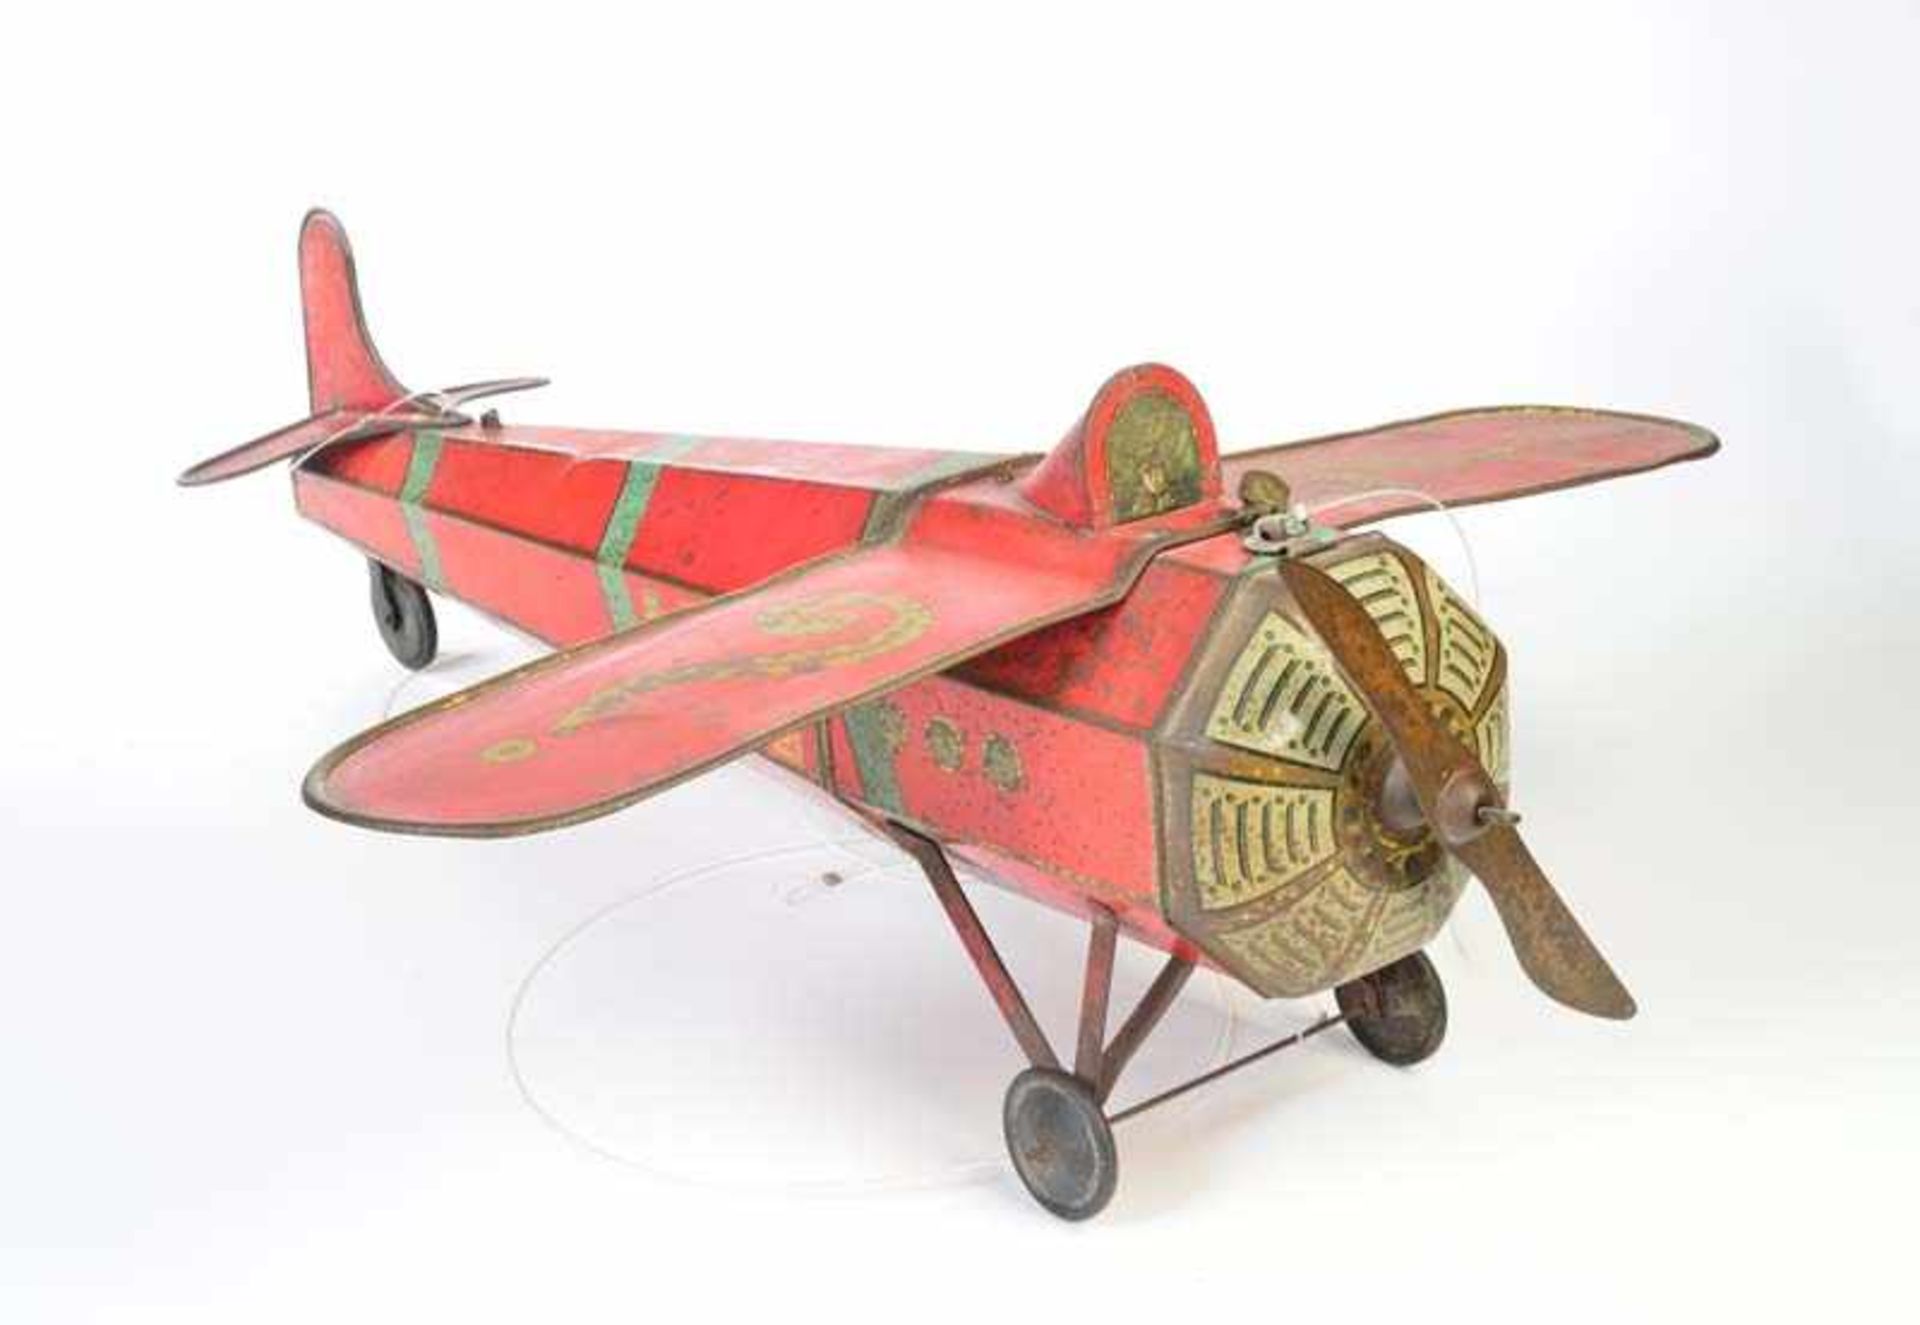 Keksdose Flugzeug, 80 cm, altersbedingte LMBiscuit Box Plane, paint d. due to age